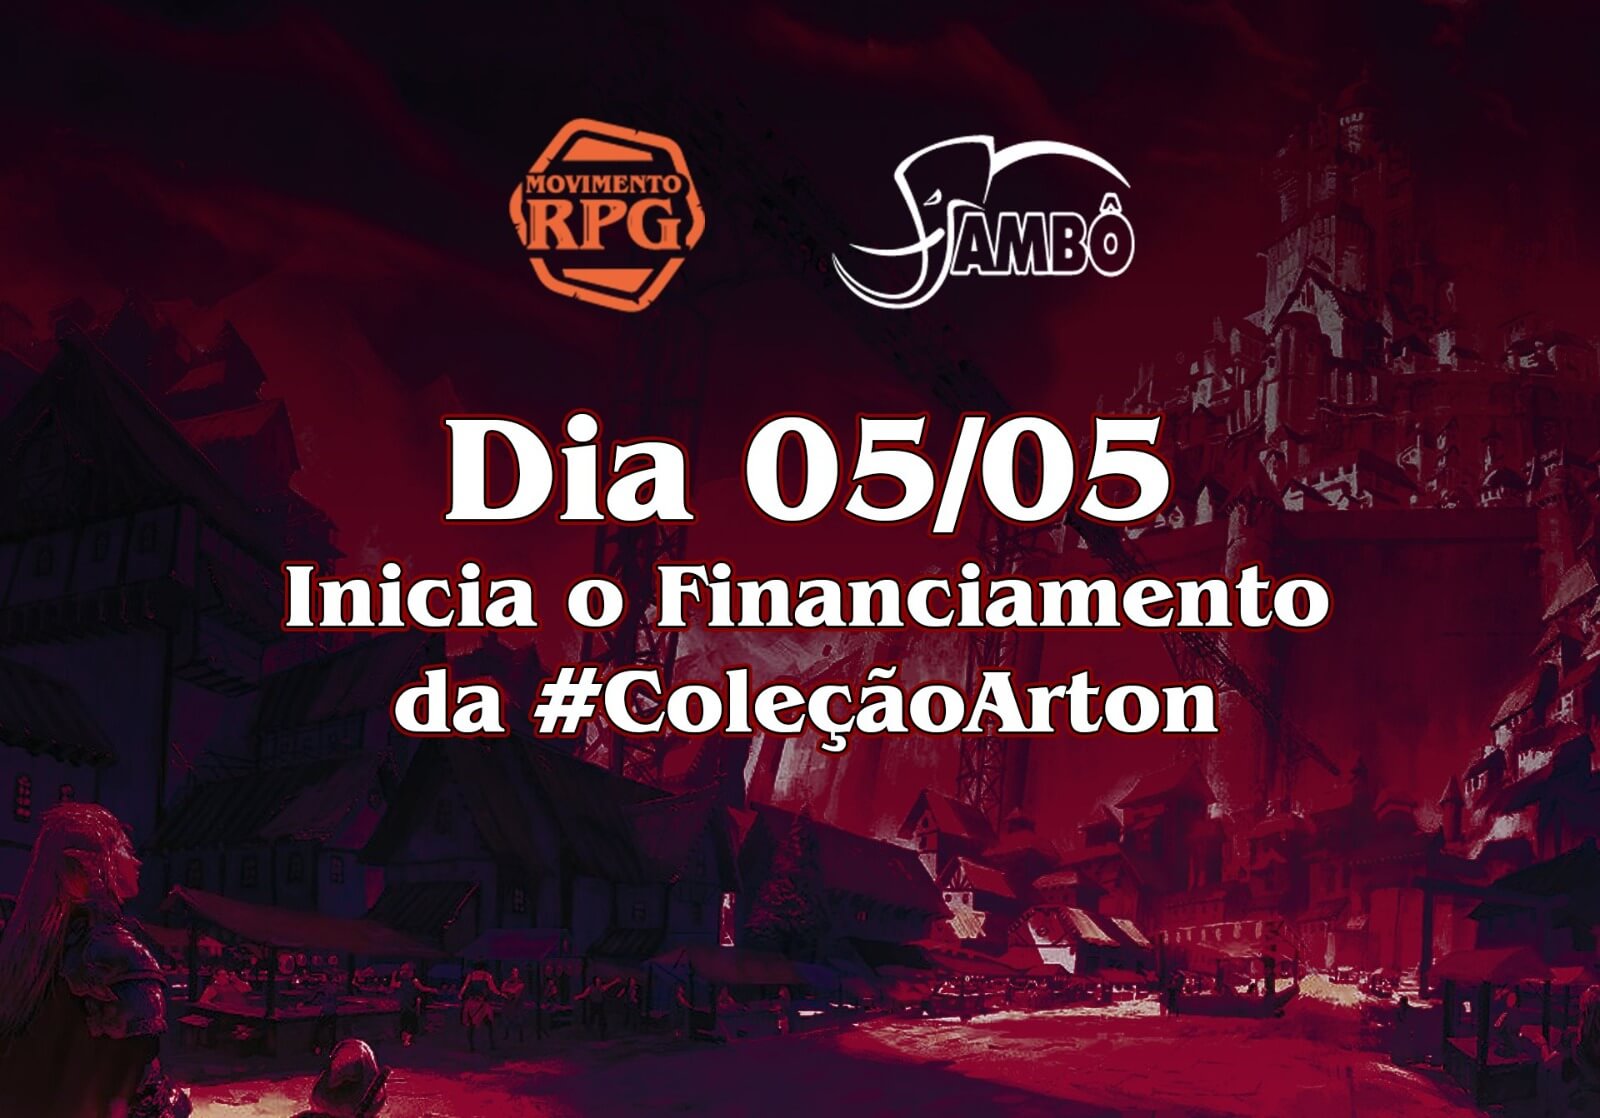 Dia 05/05 inicia o Financiamento da #ColeçãoArton